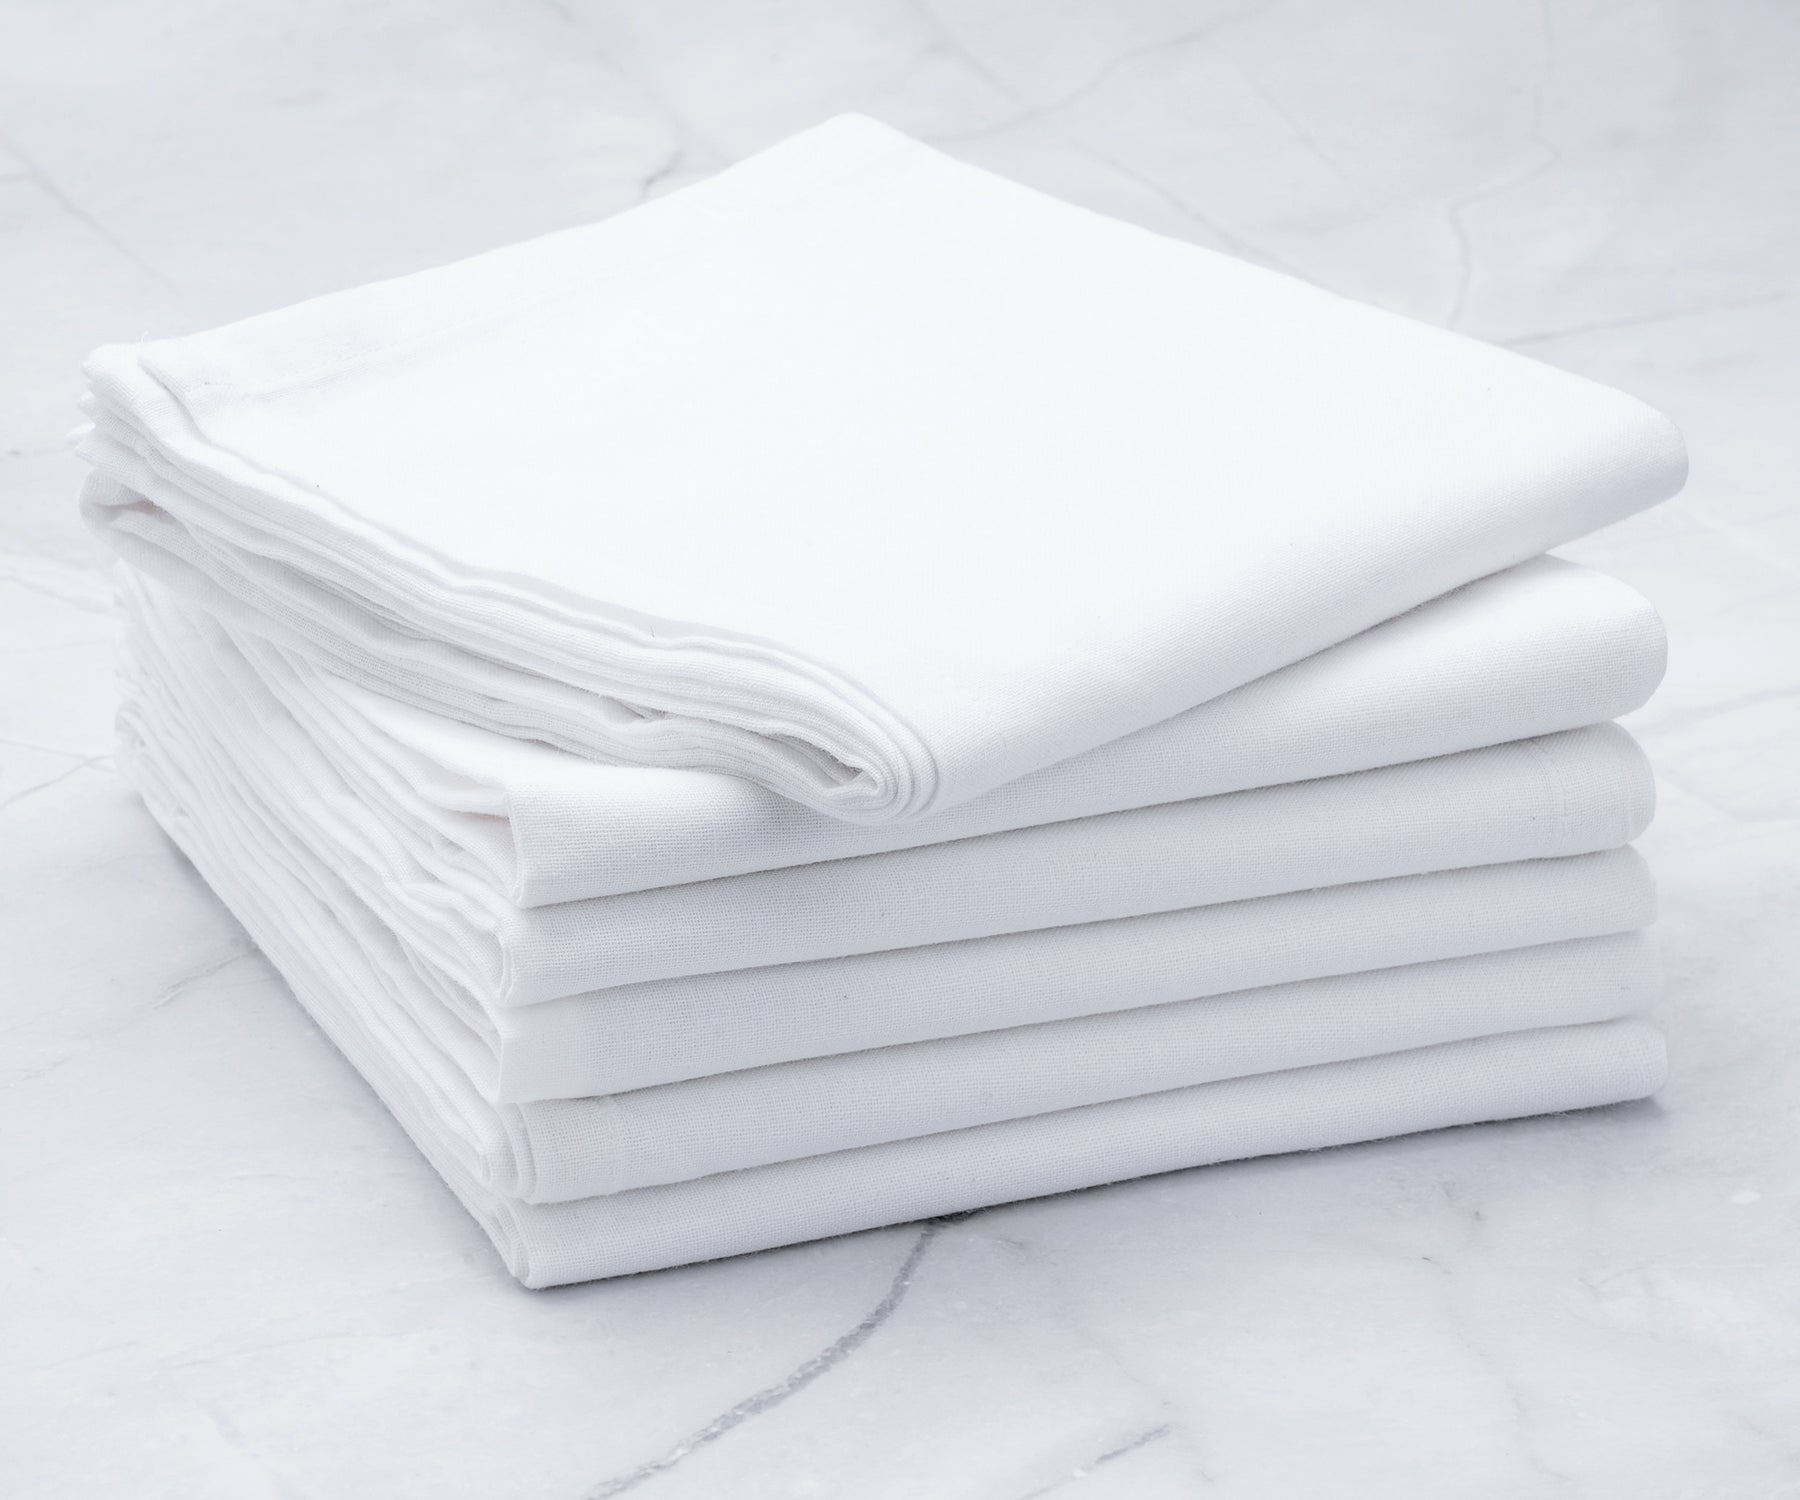 plain kitchen towels cotton, white flour sack towels for kitchen, farmhouse dish towels.